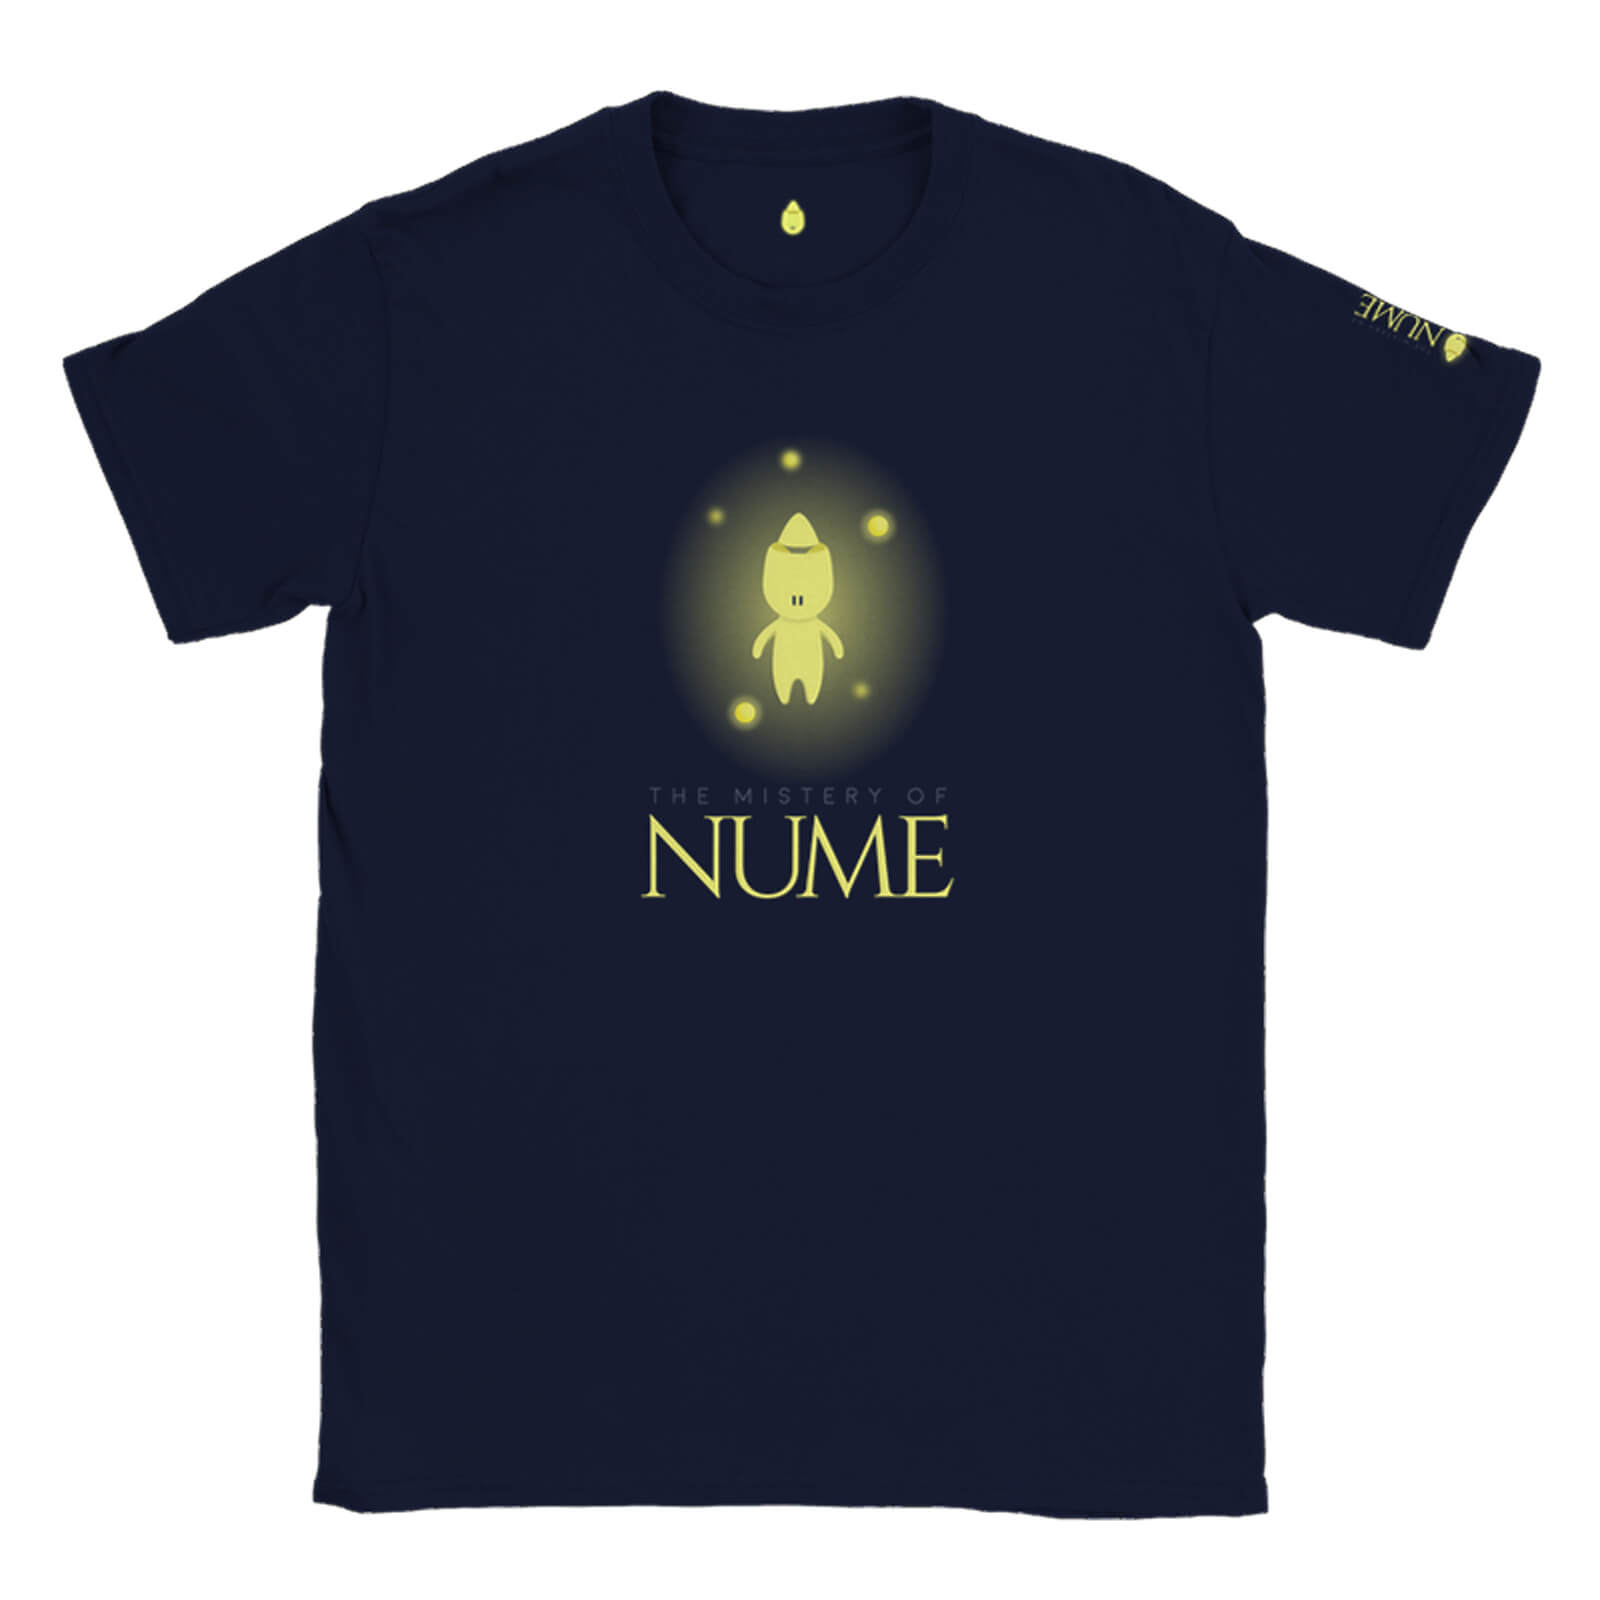 T-Shirt 2 - Img 01 - Nume World